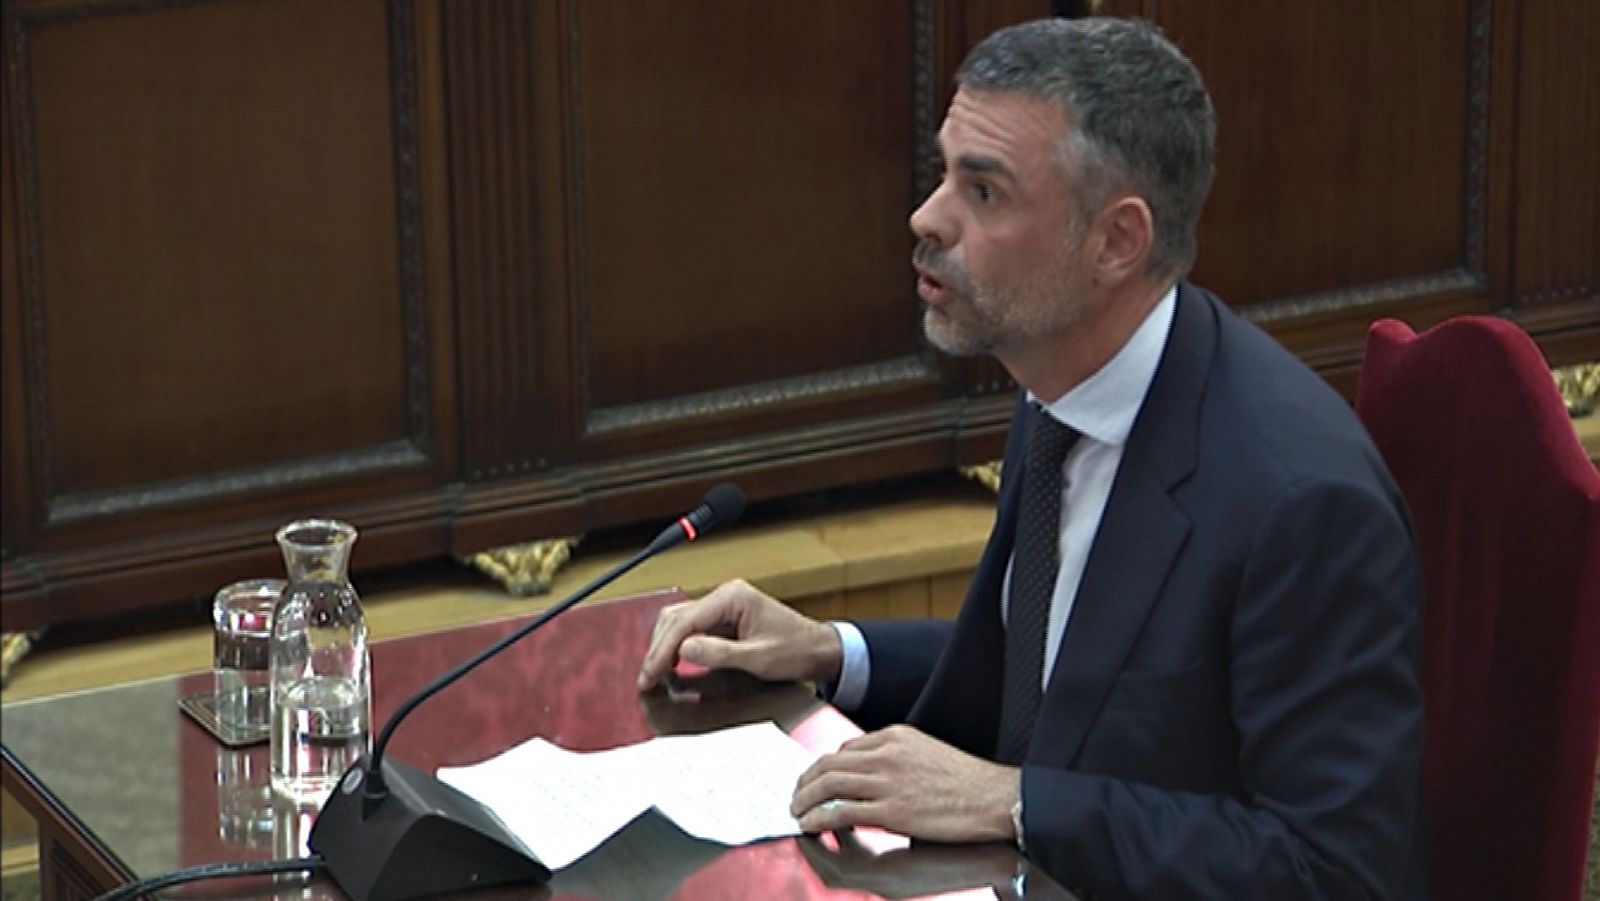 Juicio procés - Santi Vila, a los jueces: "Espero que con su sentencia formen parte de la solución y no del agravio" - RTVE.es